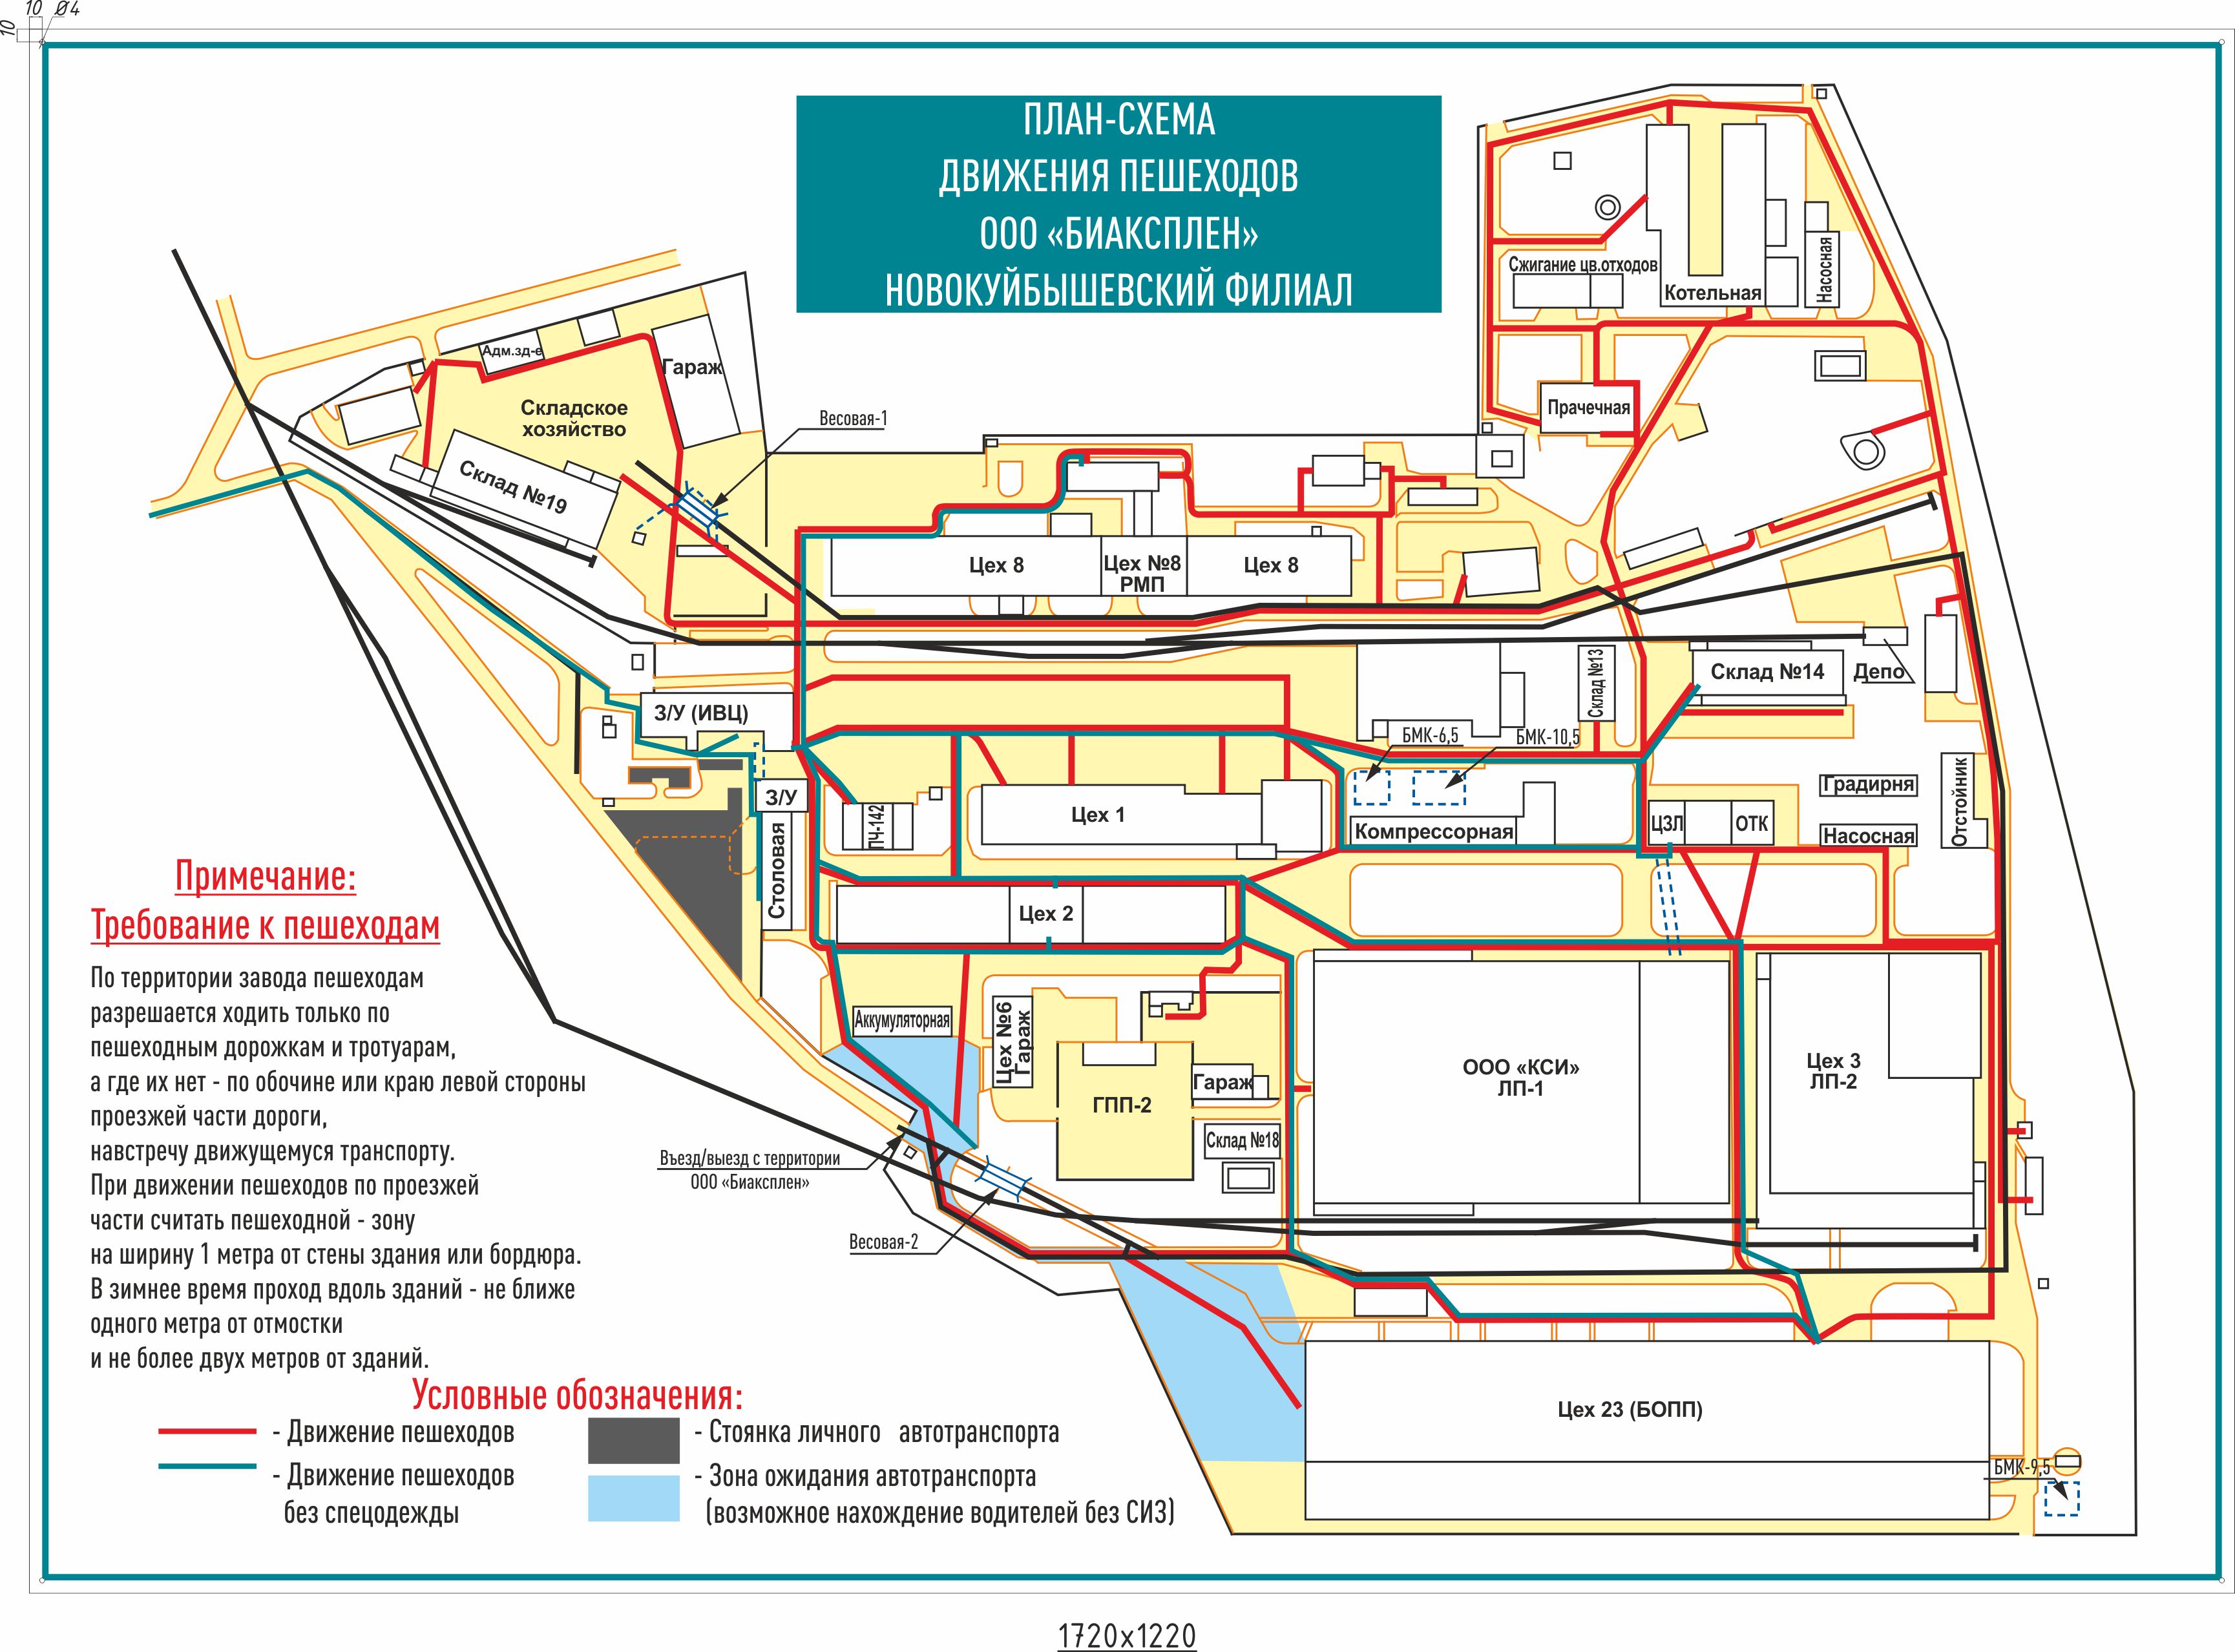 План схема движения пешеходов по территории